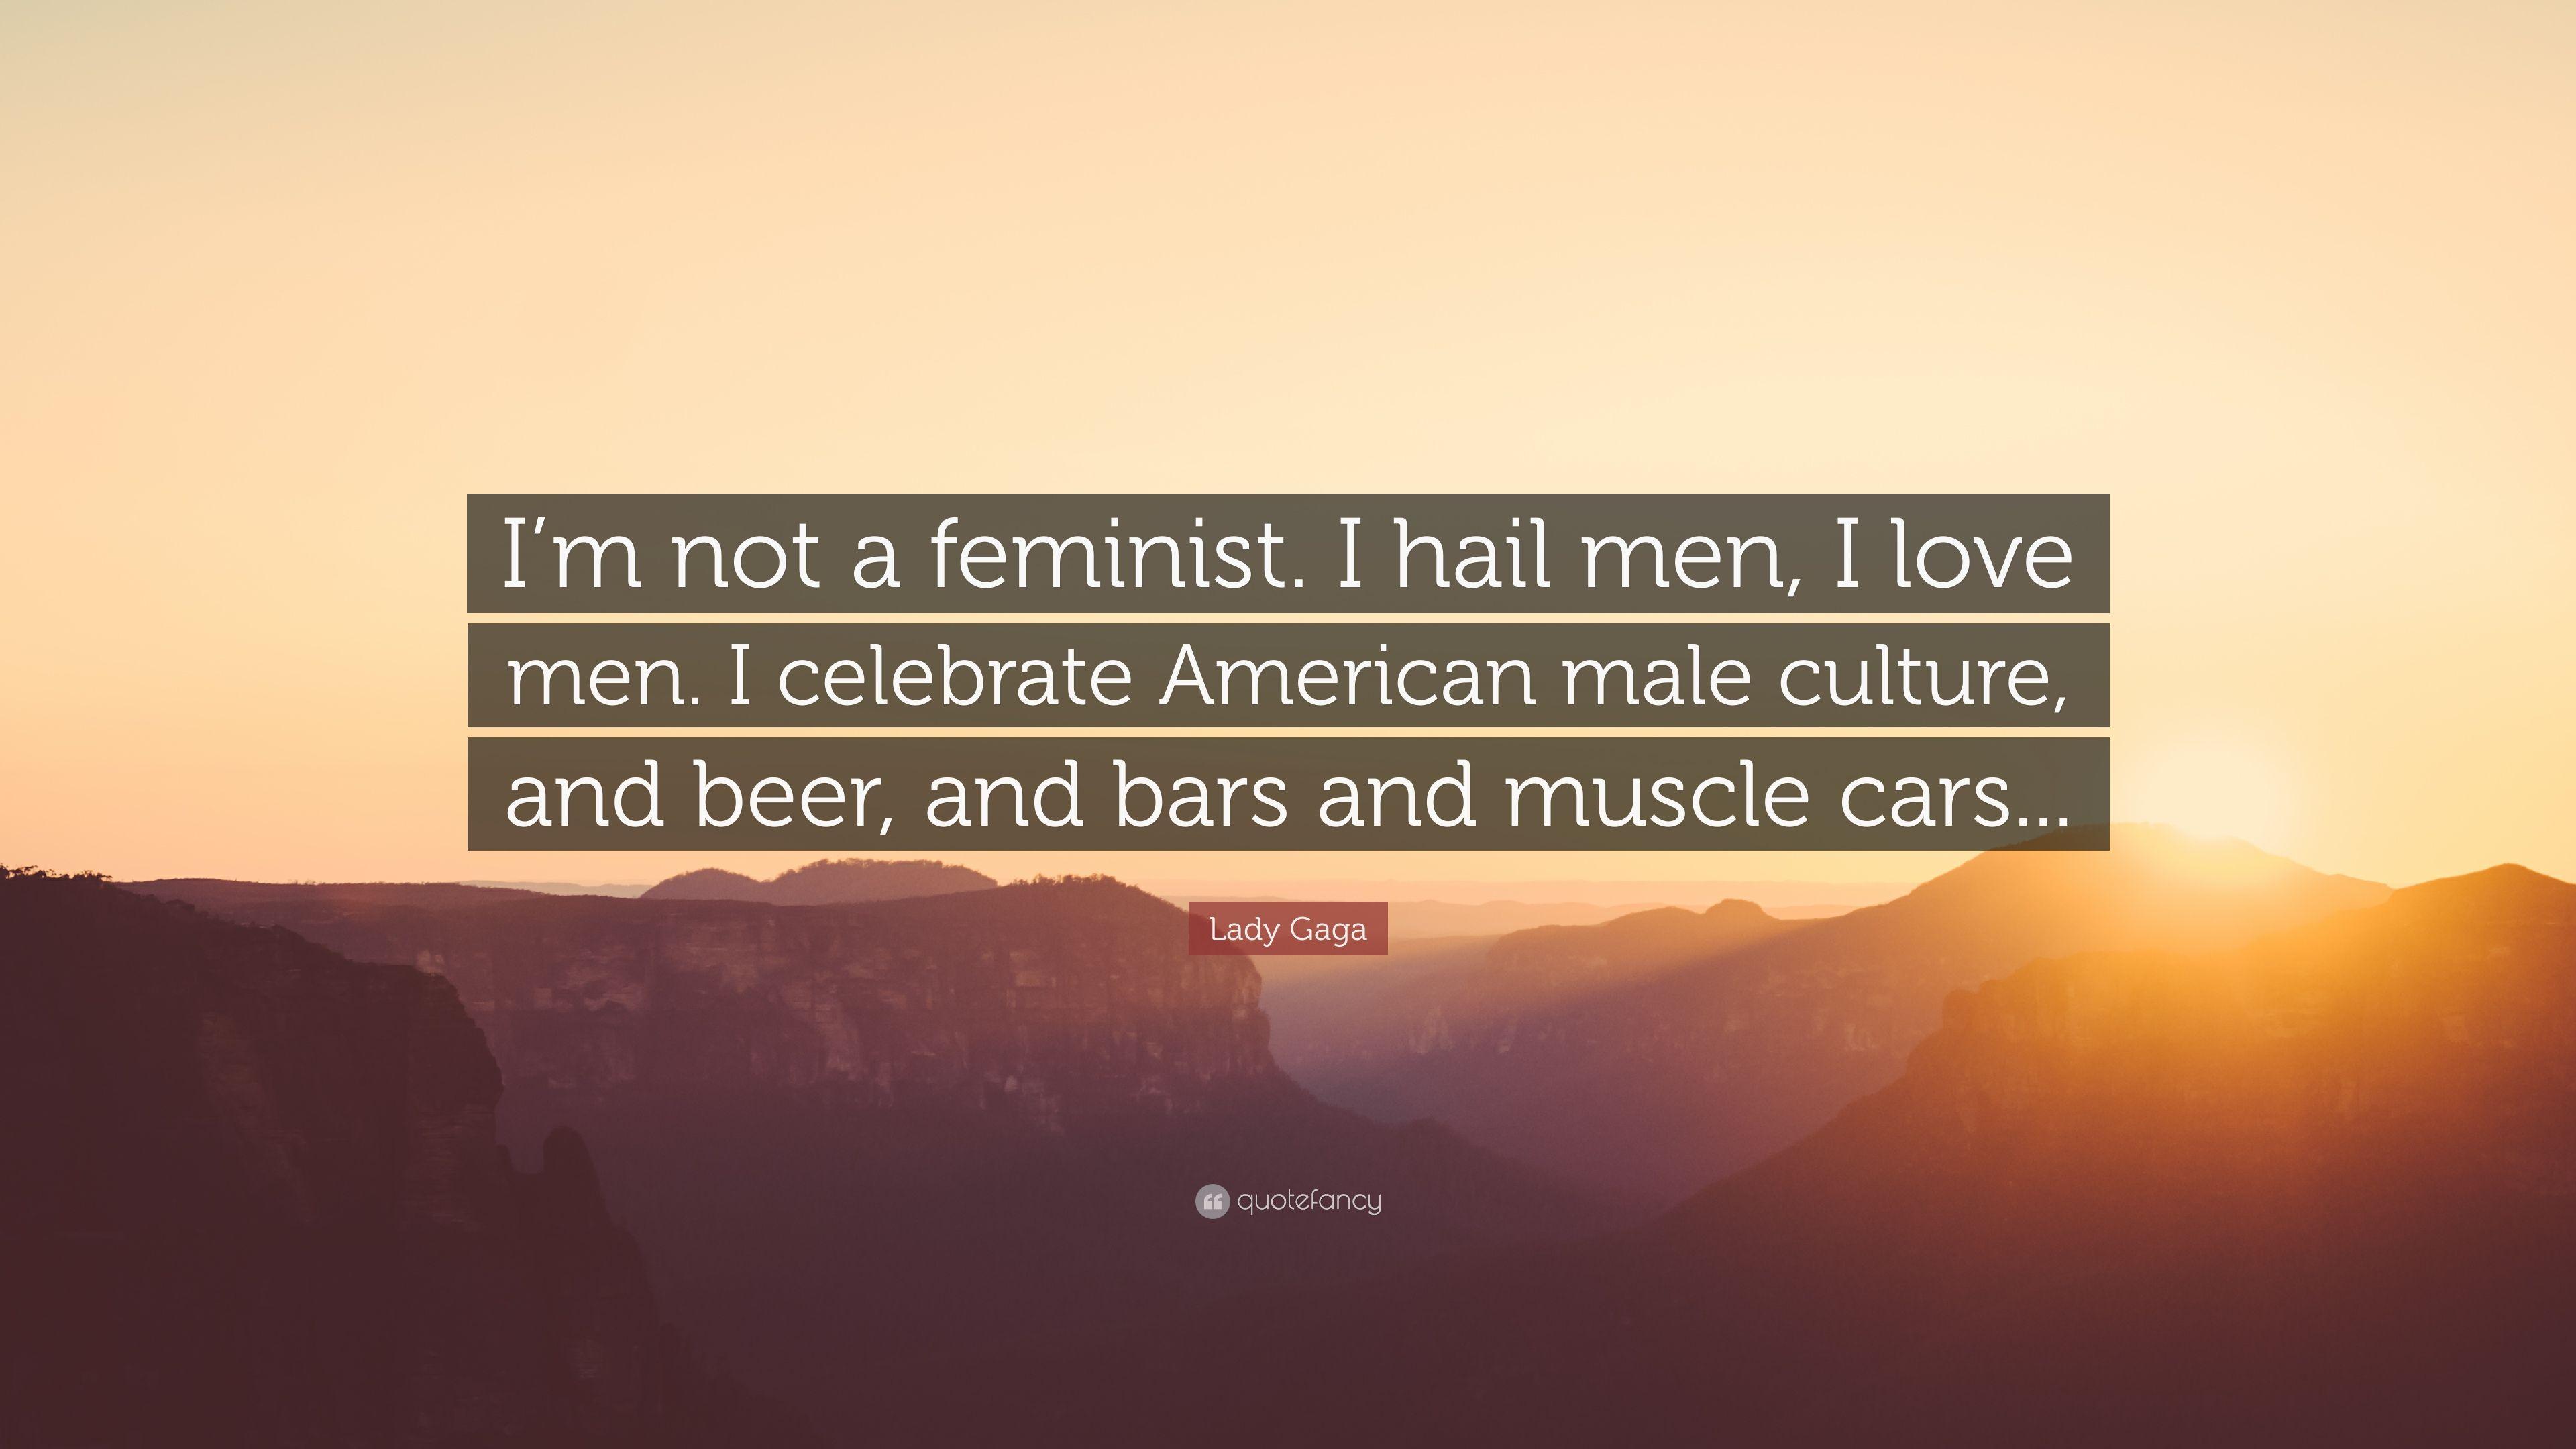 Lady Gaga Quote: “I'm not a feminist. I hail men, I love men. I